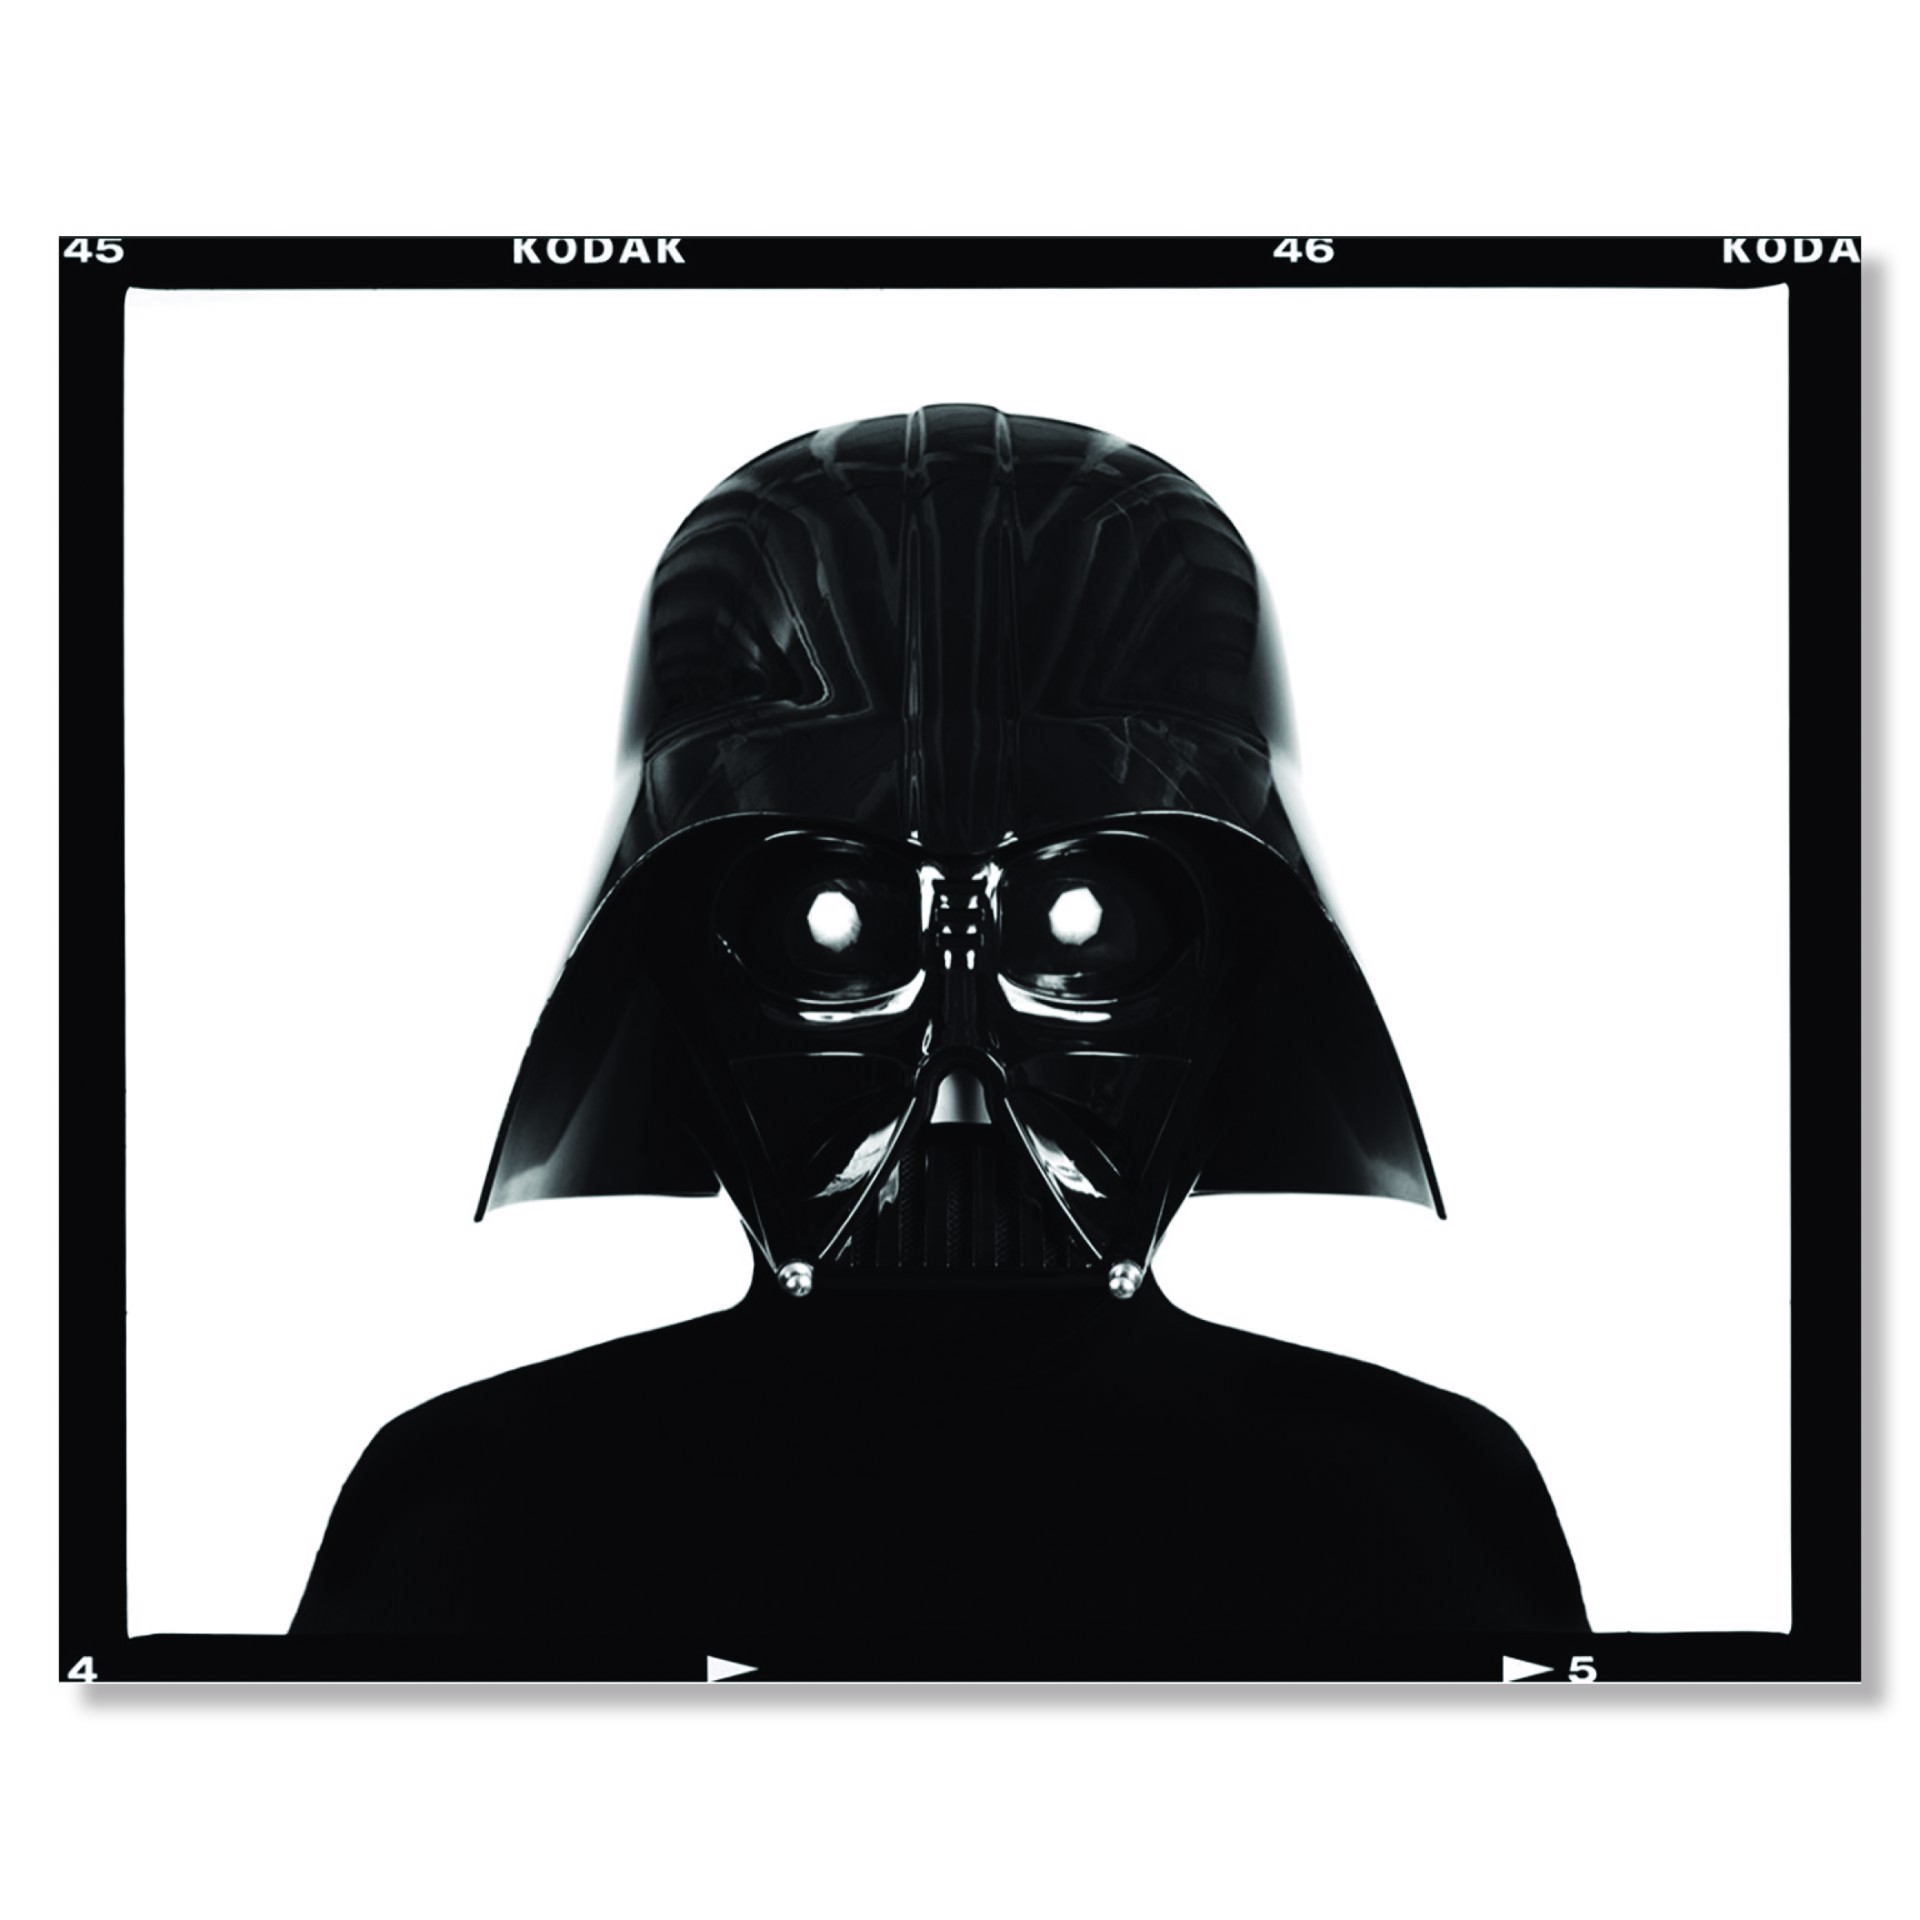 Darth Vader by Tyler Shields